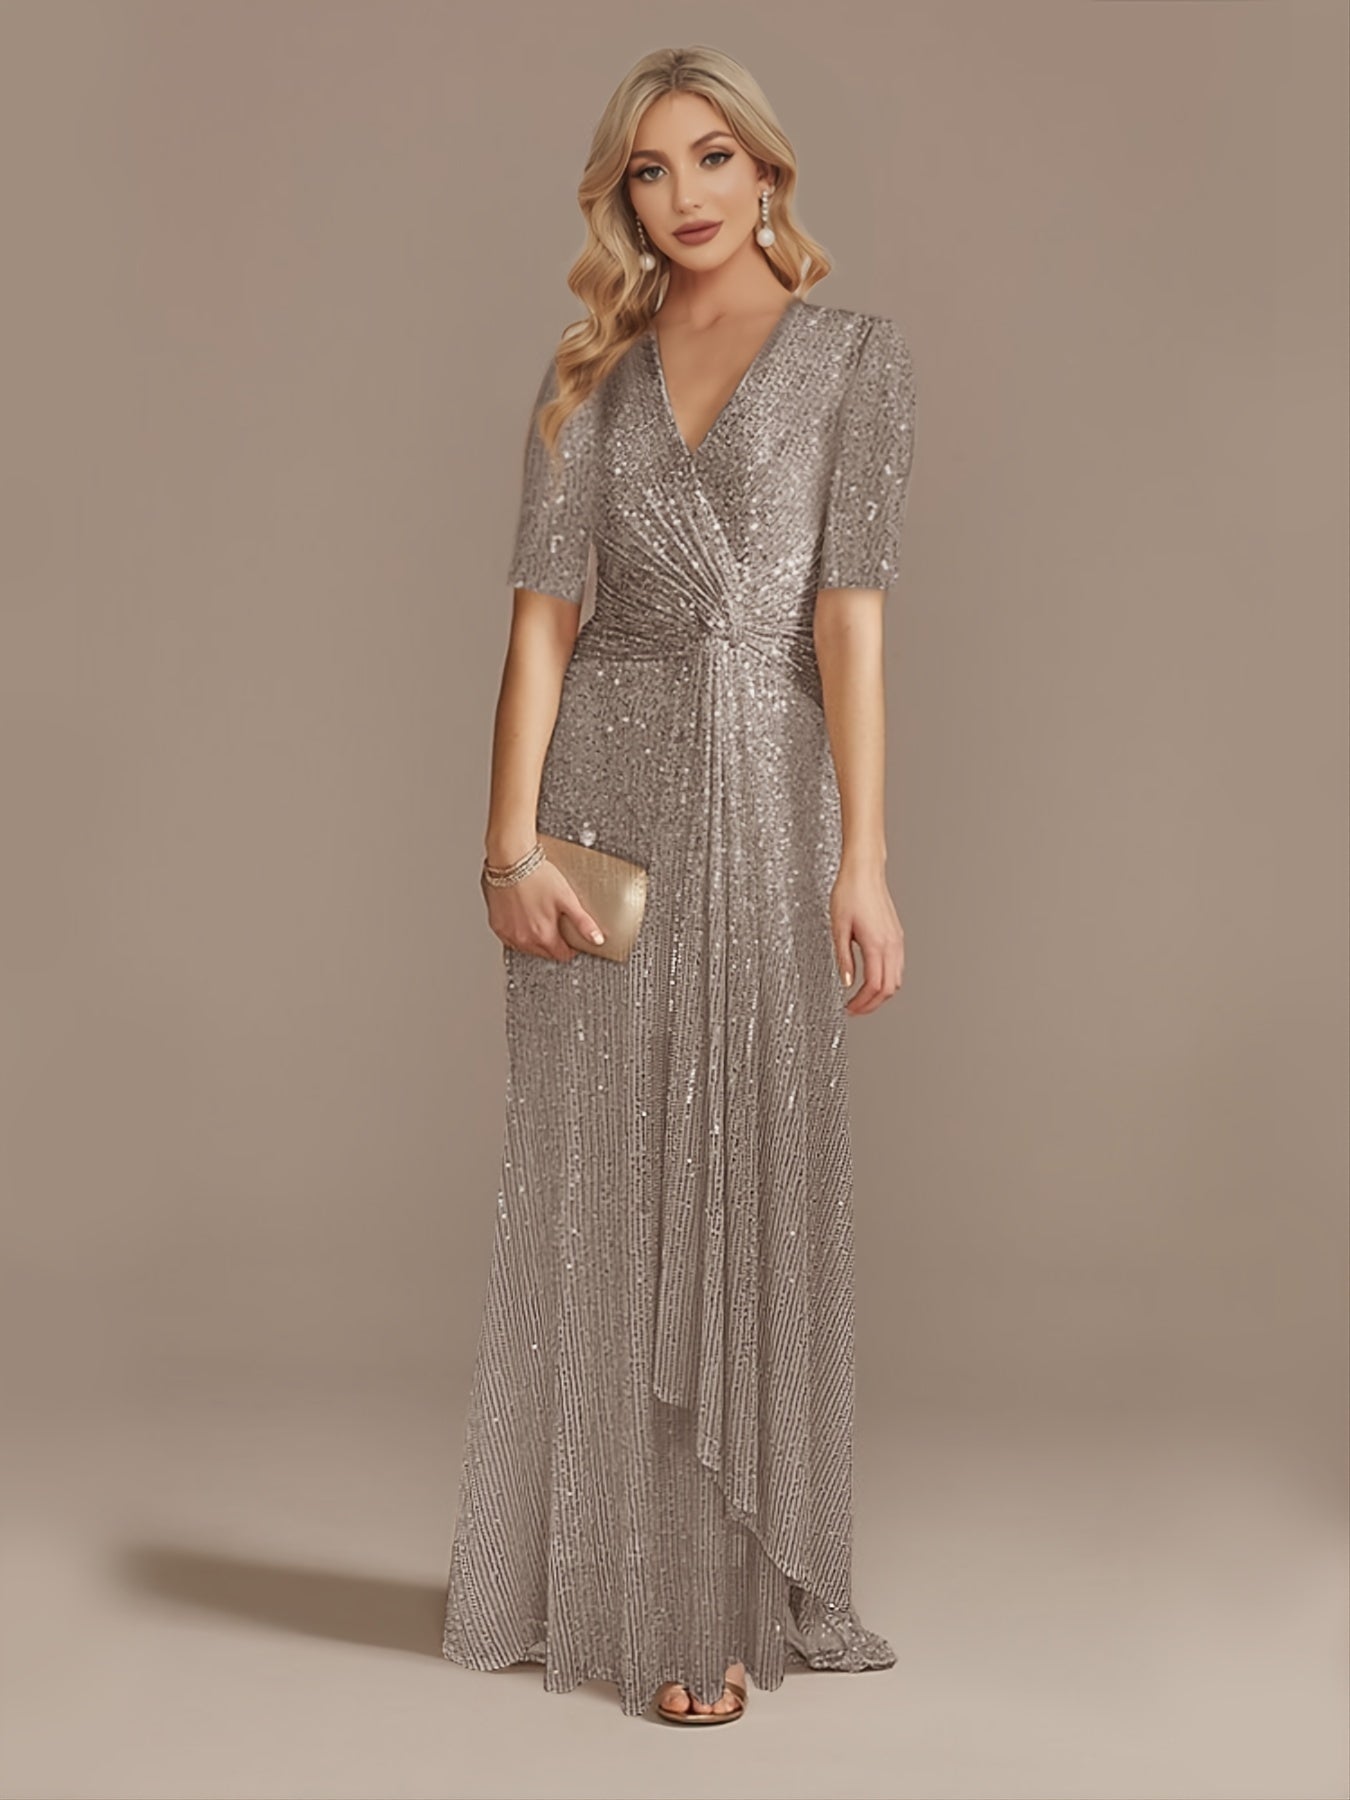 XUIBOL | Twist Sequin Maxi Dress, Elegant V Neck Short Sleeve High Waist Ruffle Hem Evening Dress